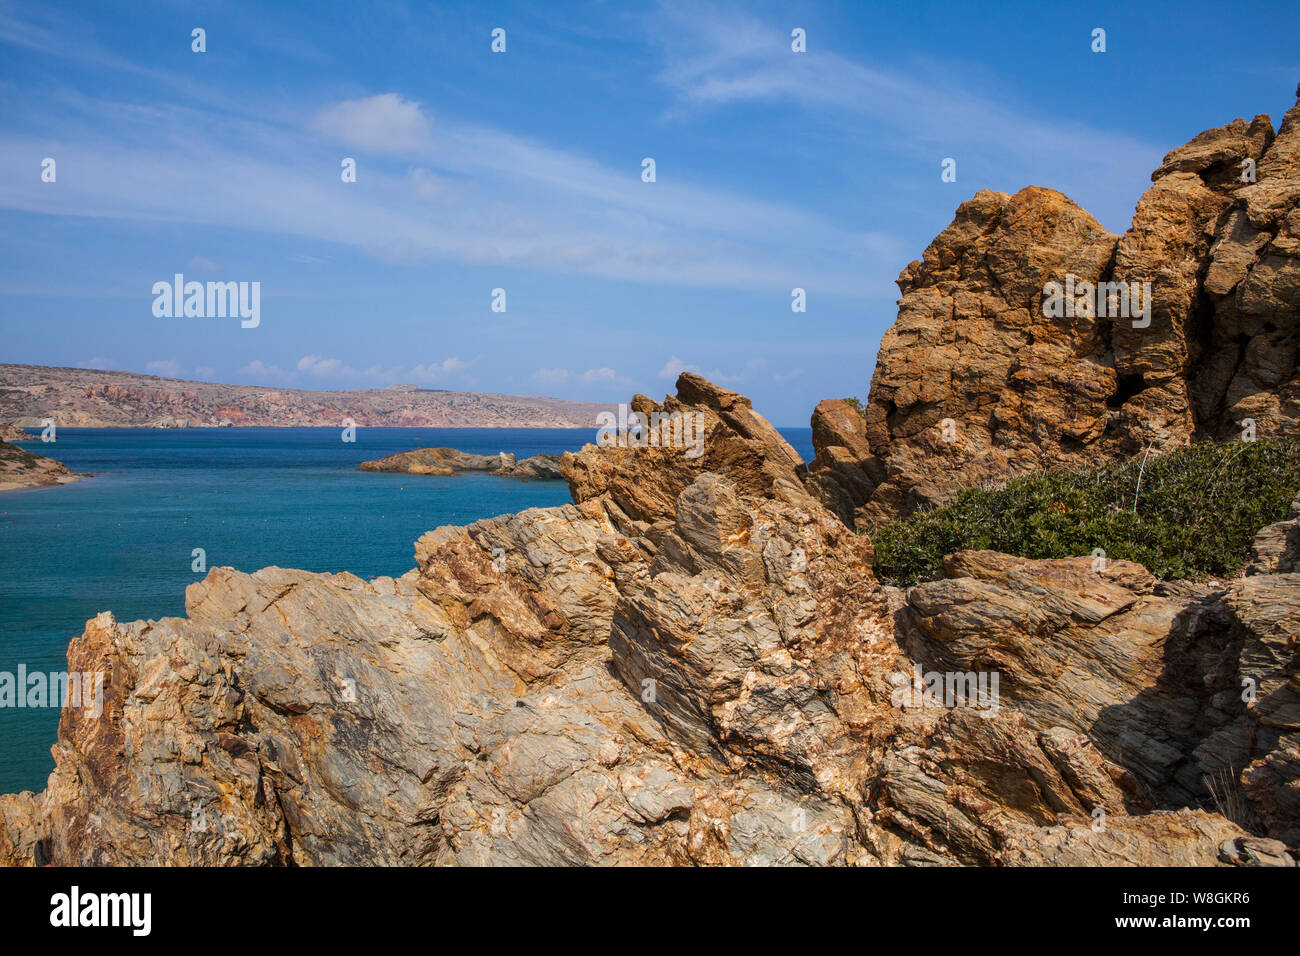 Vai beach - una popolare destinazione turistica in Creta, Grecia Foto Stock